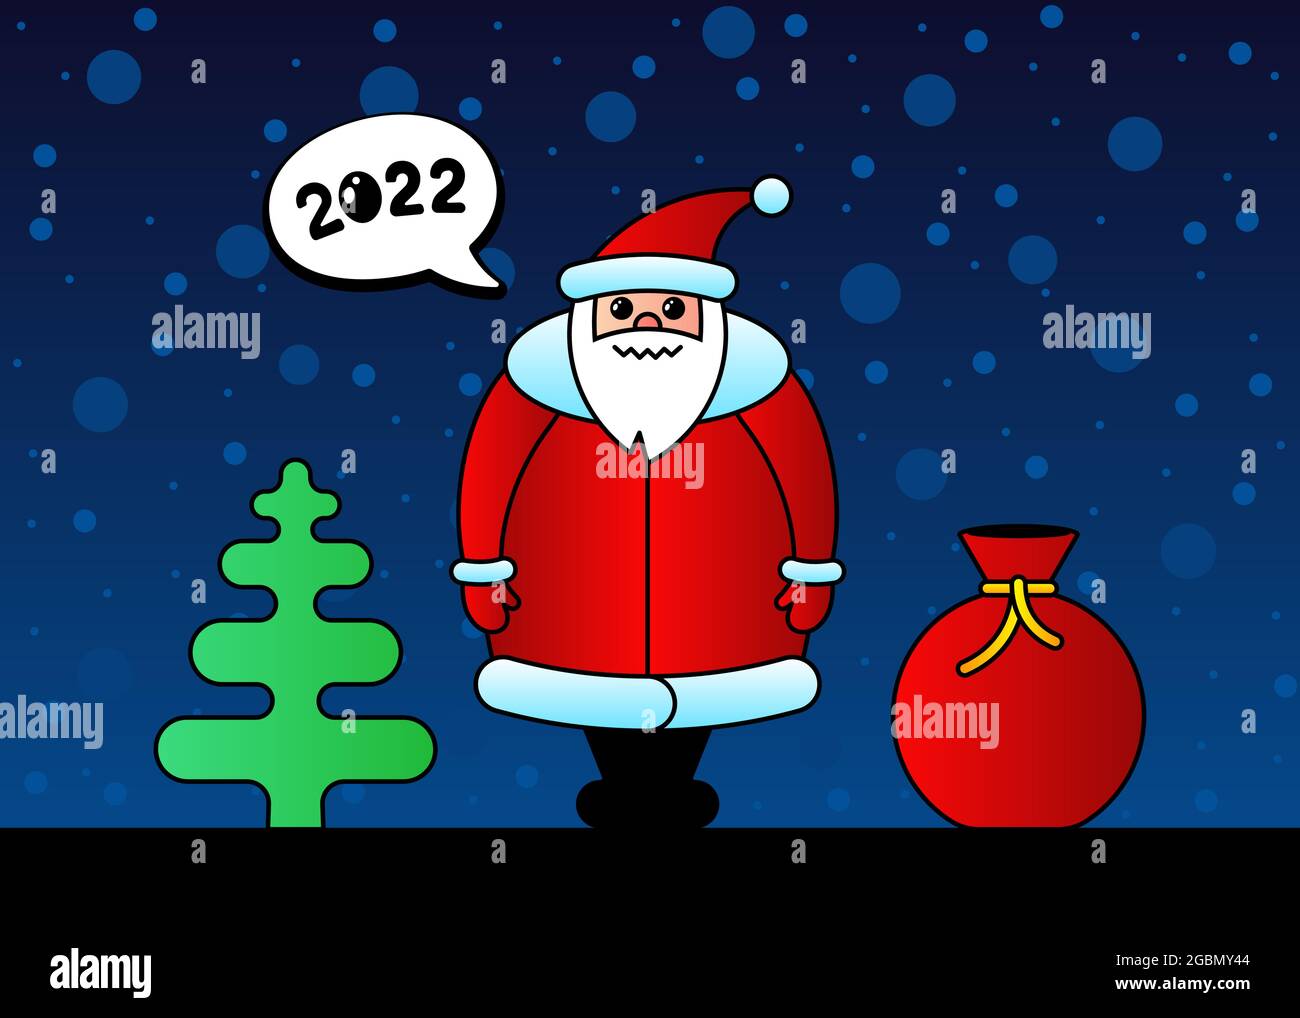 Nette Cartoon lustige kawaii Weihnachtsmann Charakter für Weihnachten und Happy New Year 2022 Feier. Geschenktüte Fichte und Schnee in der Nacht süße Winterurlaub Grußkarte. Vektorgrafik eps Stock Vektor